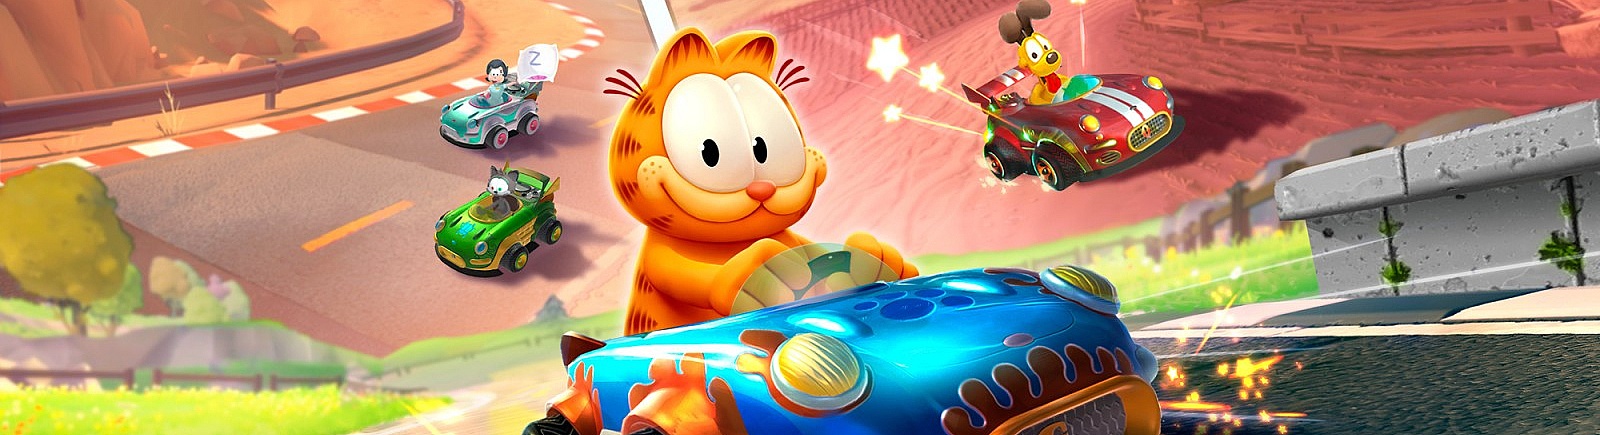 Дата выхода Garfield Kart - Furious Racing  на PC, PS4 и Xbox One в России и во всем мире